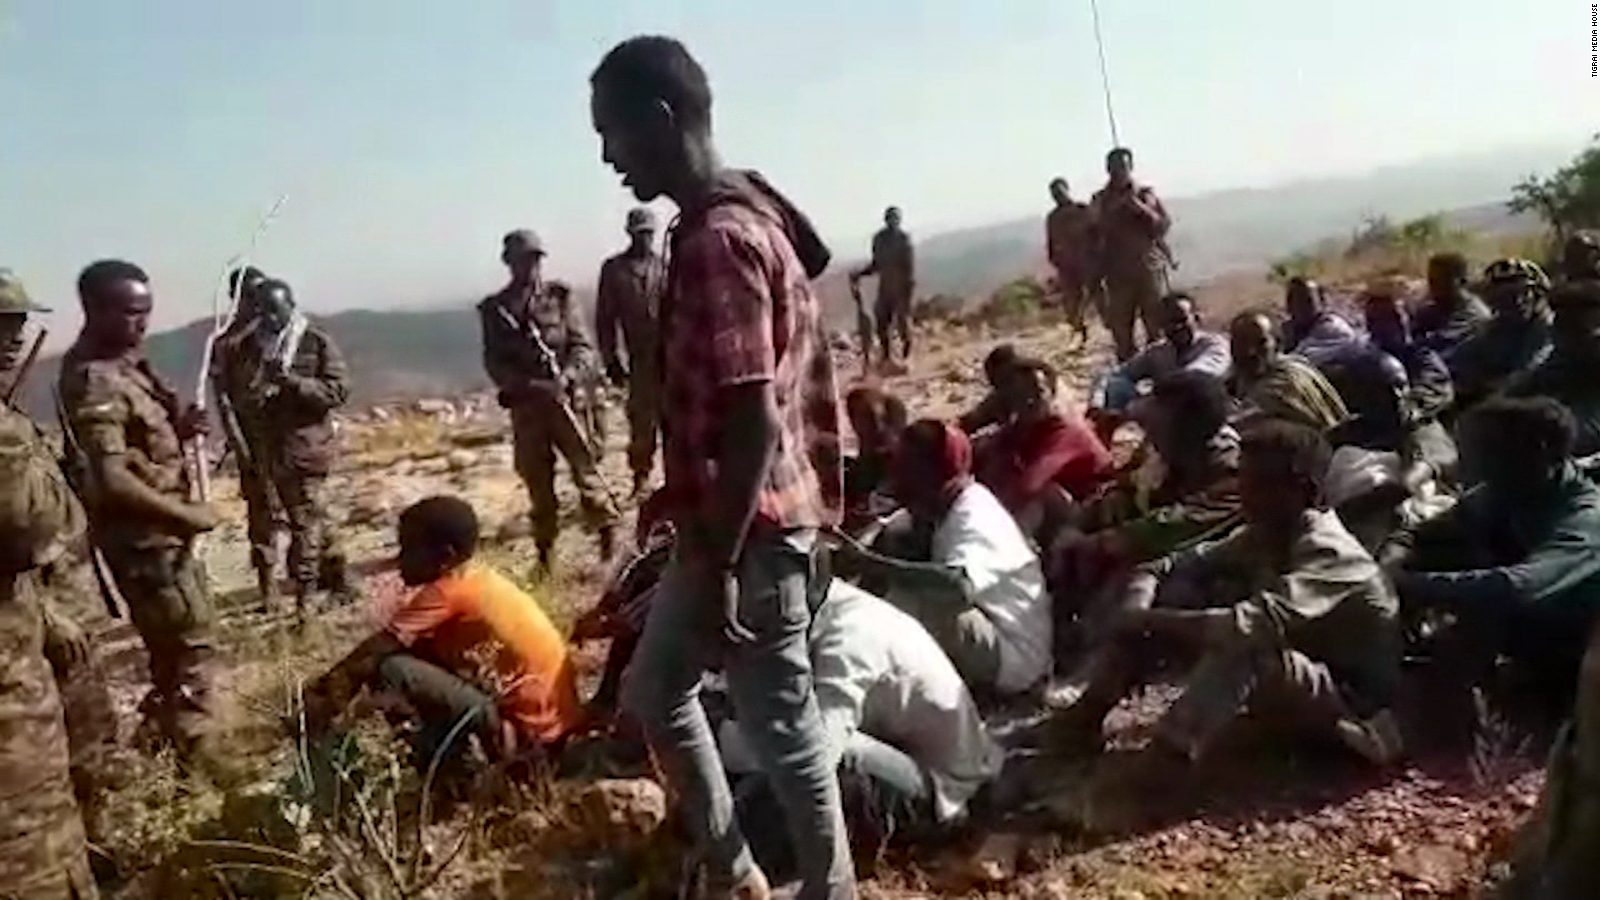 Perturbador video de masacre en Tigray, Etiopía: más de 30 jóvenes se presumen muertos en brutal ejecución extrajudicial | Video 